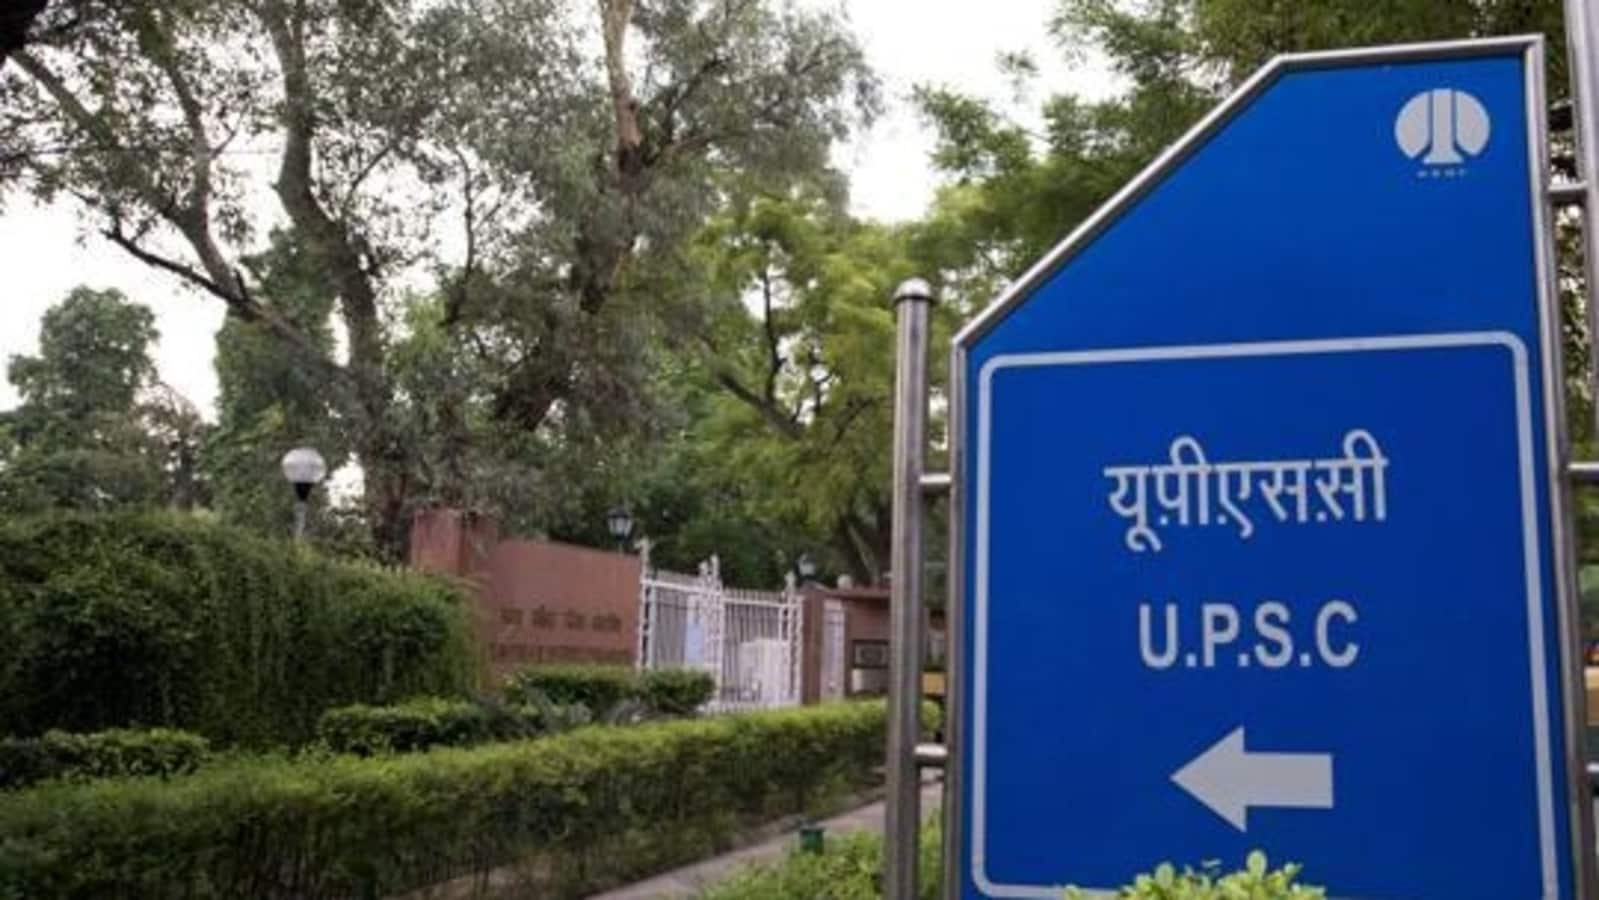 रांची में 56 परीक्षा केंद्रों पर 28 मई को होगी UPSC की प्रारंभिक परीक्षा- UPSC preliminary exam will be held on May 28 at 56 exam centers in Ranchi